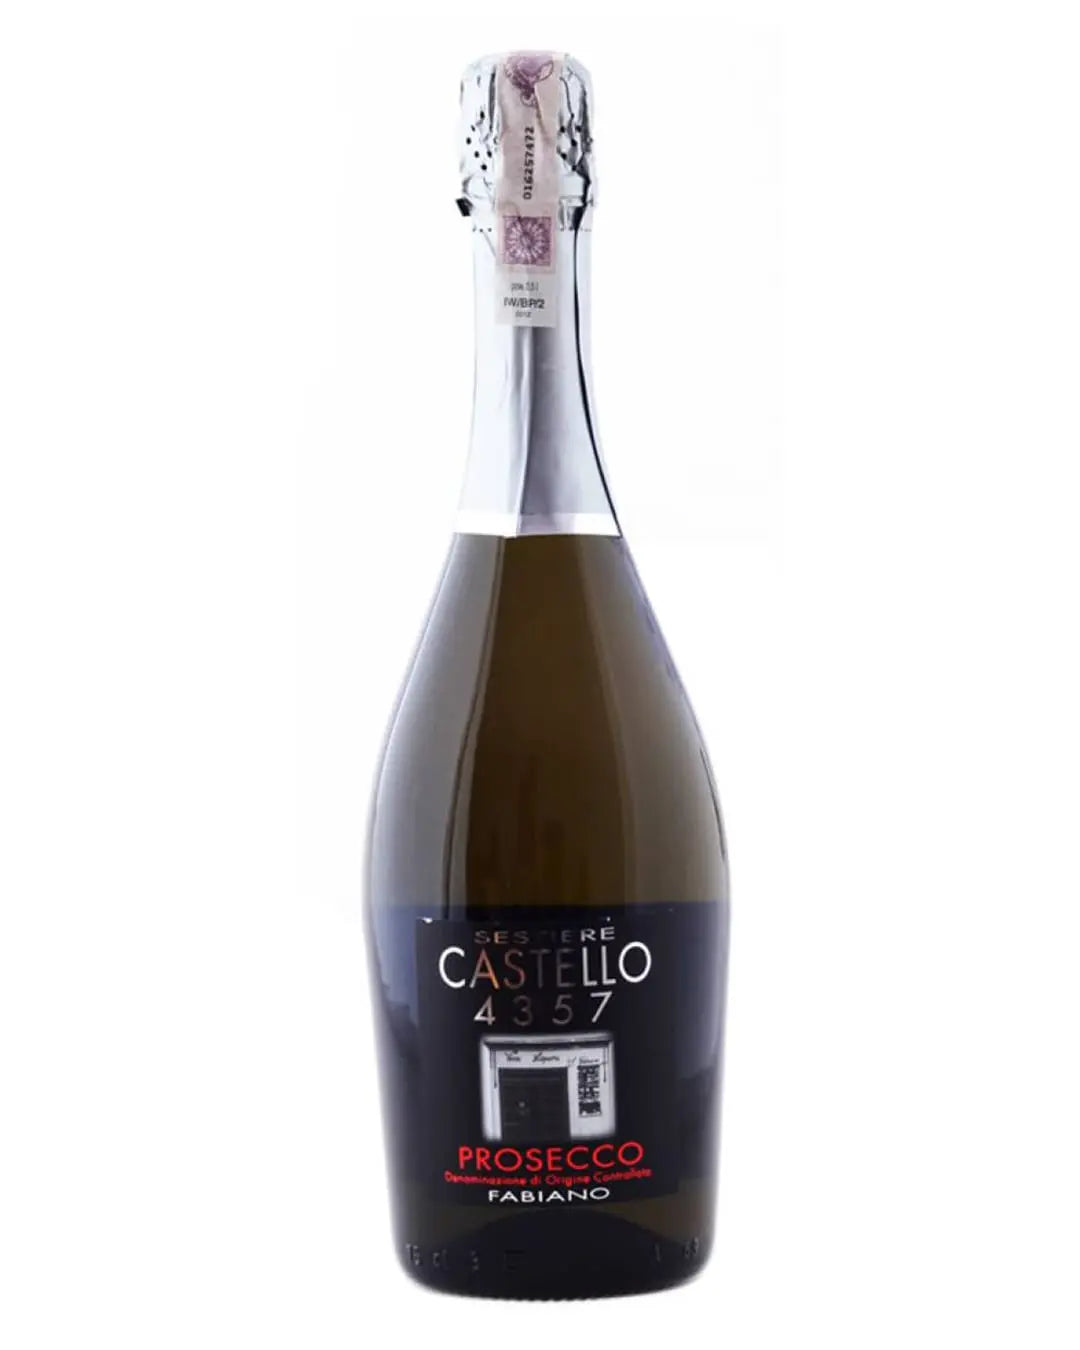 Castello 4357 Prosecco, 75 cl Champagne & Sparkling